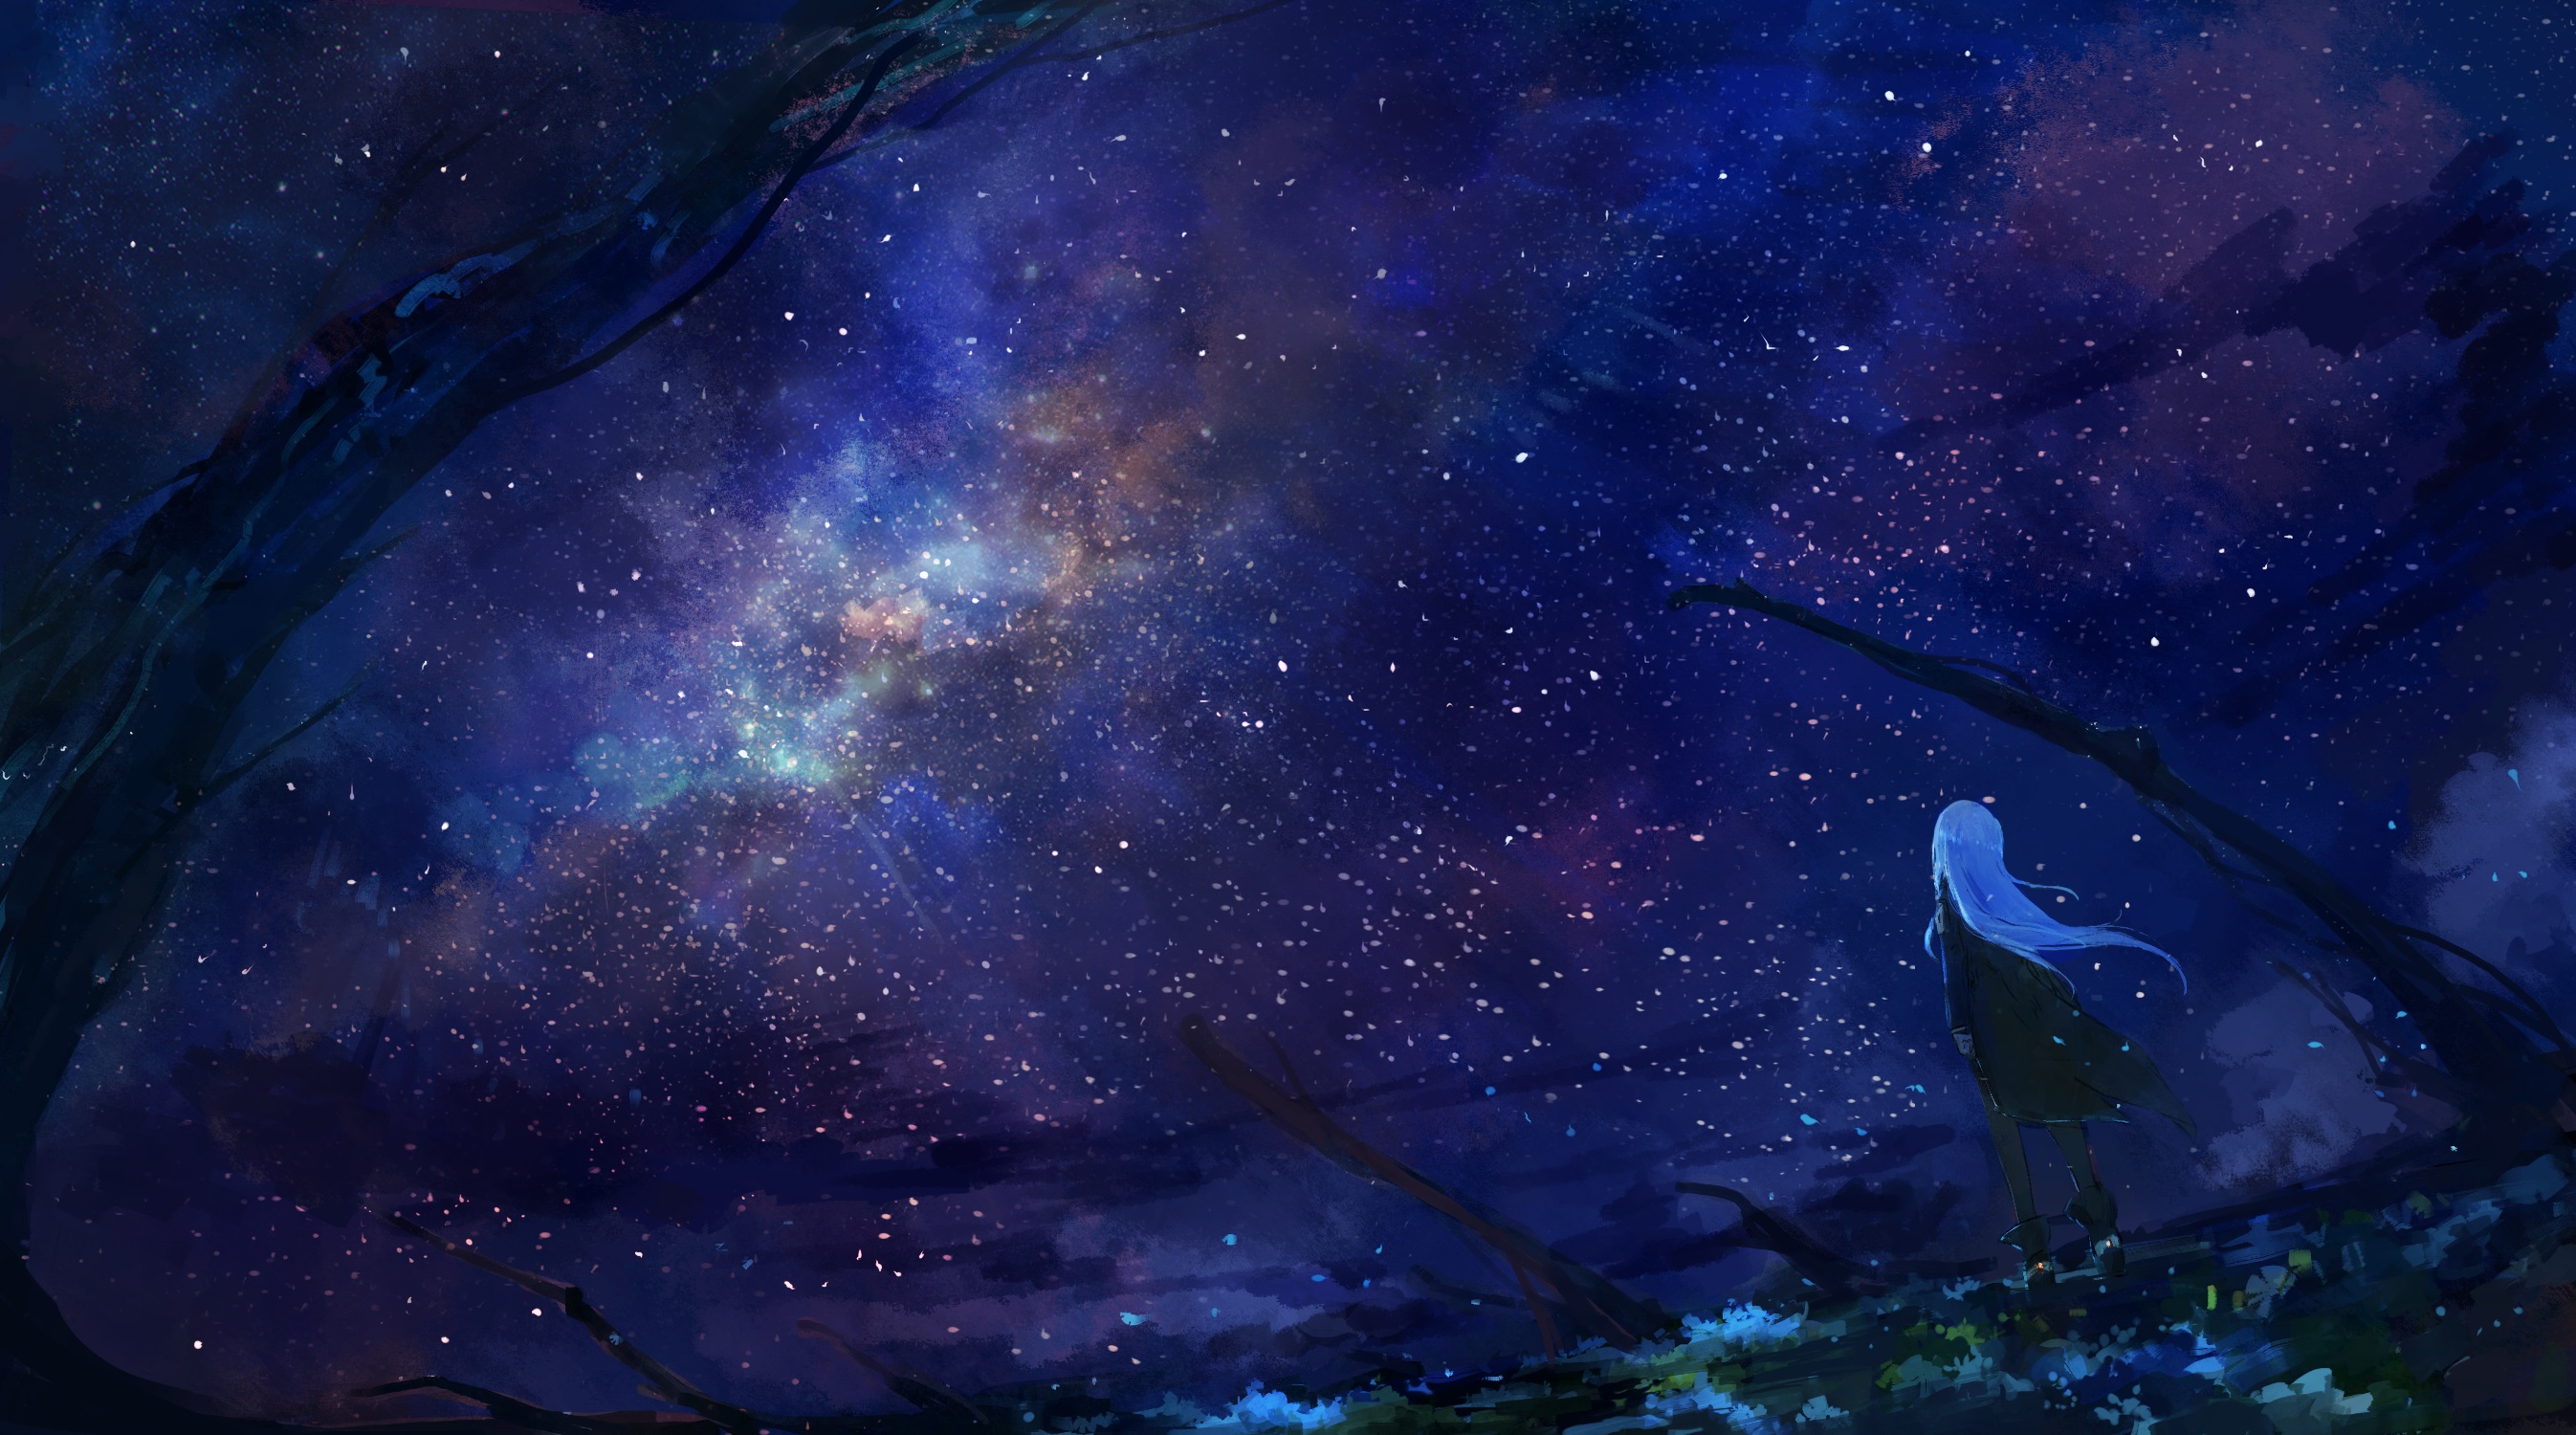 Скачать обои бесплатно Аниме, Звездное Небо, Оригинал картинка на рабочий стол ПК